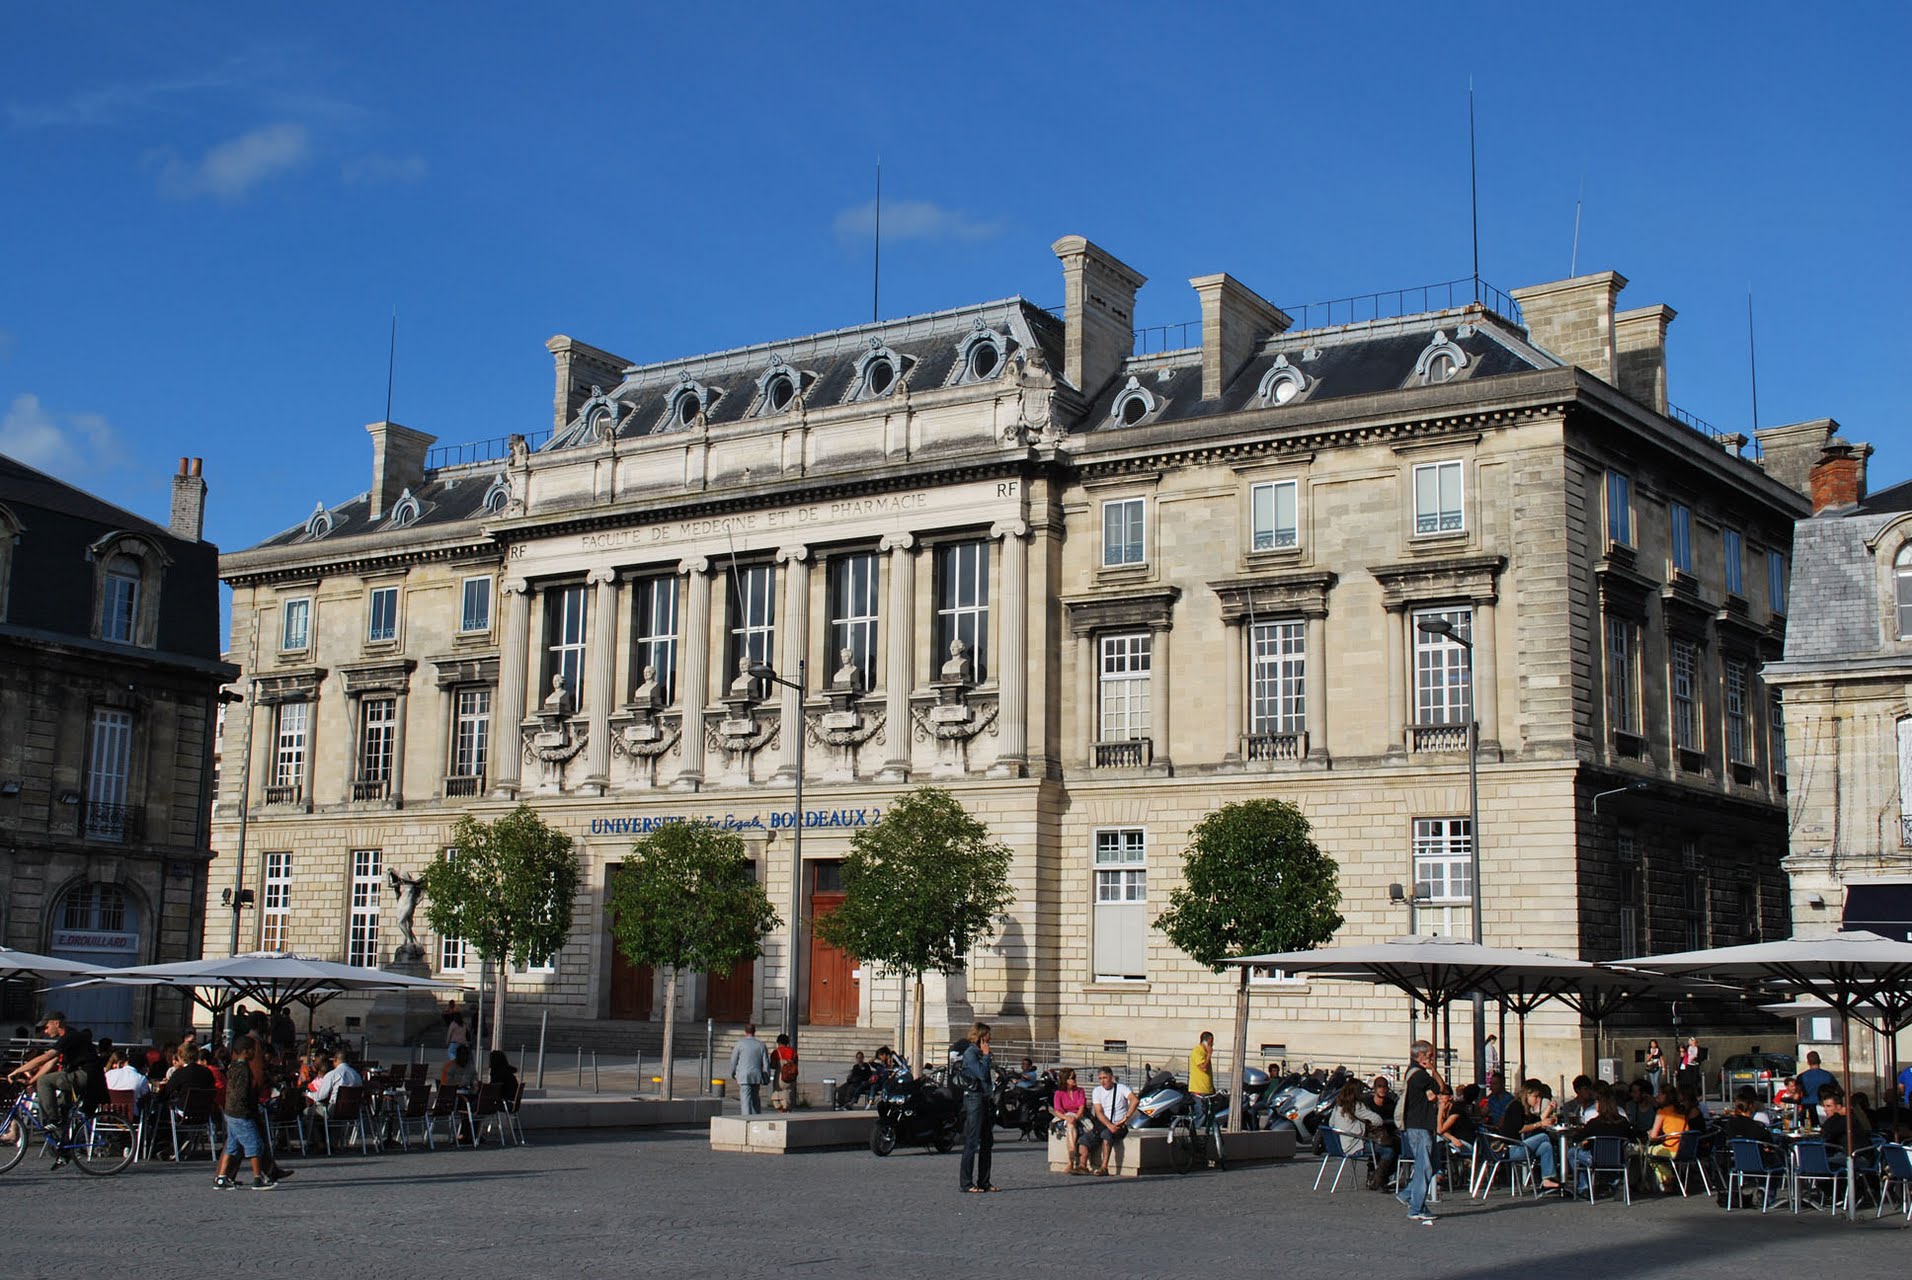 envío prefacio Bienvenido Université de Bordeaux joins VIU - Venice International University